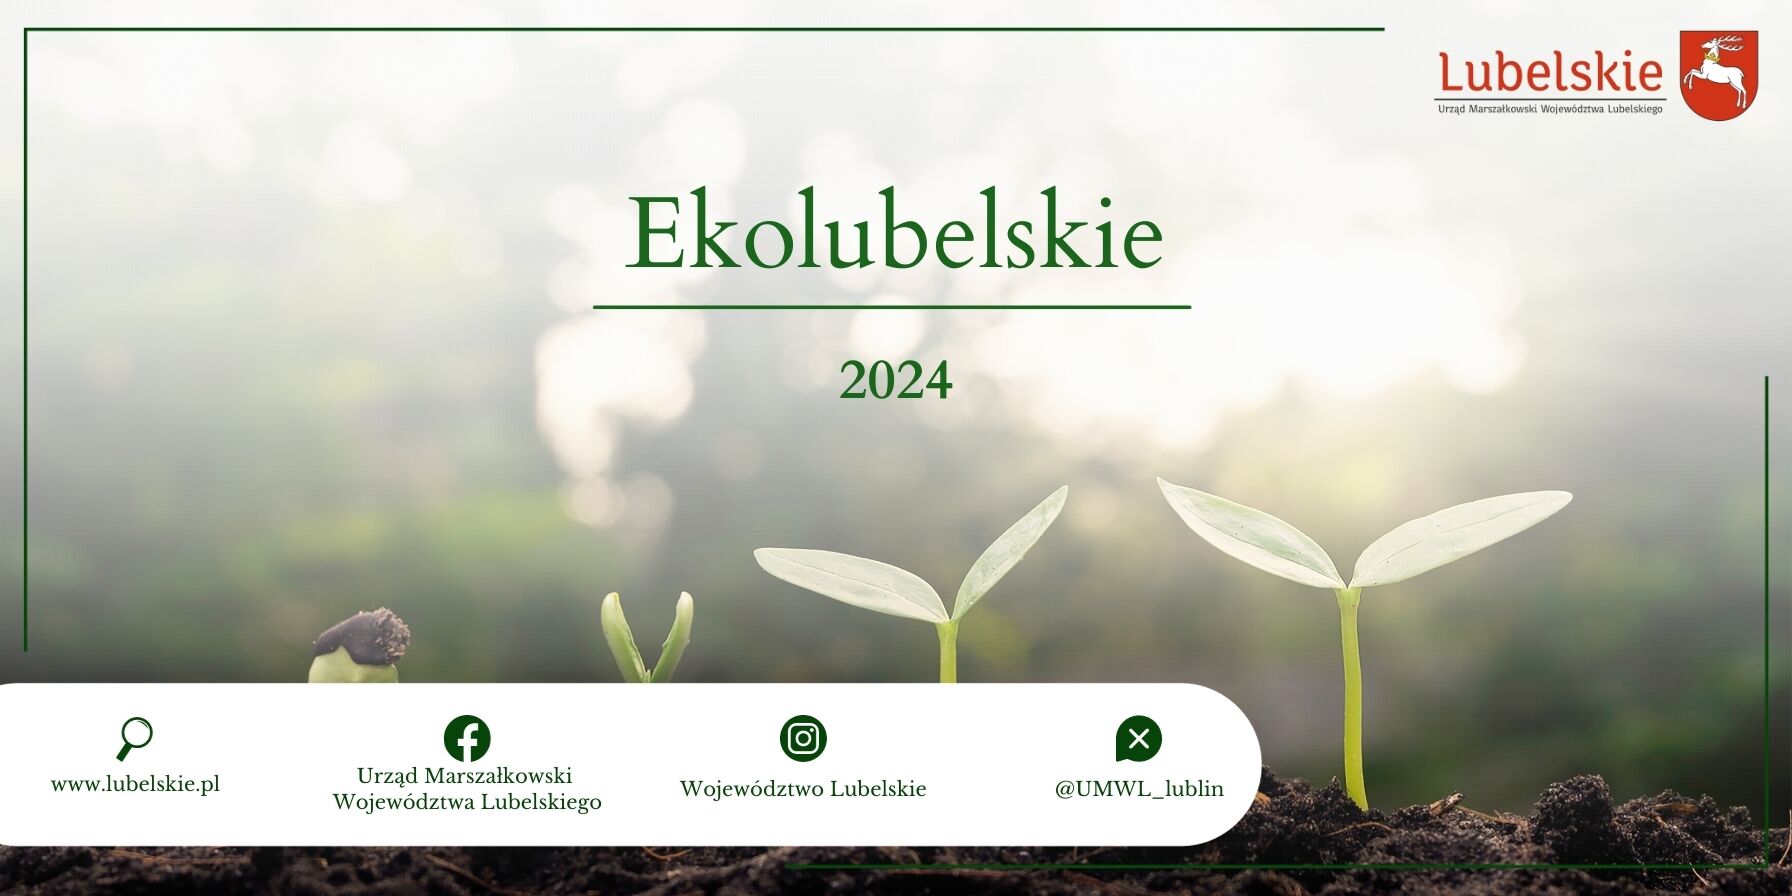 Baner promocyjny z hasłem "Ekolubelskie 2024". Na przedzie trzy sadzonki roślin, w tle rozmyte drzewa. Na dole logotypy i adresy internetowe.